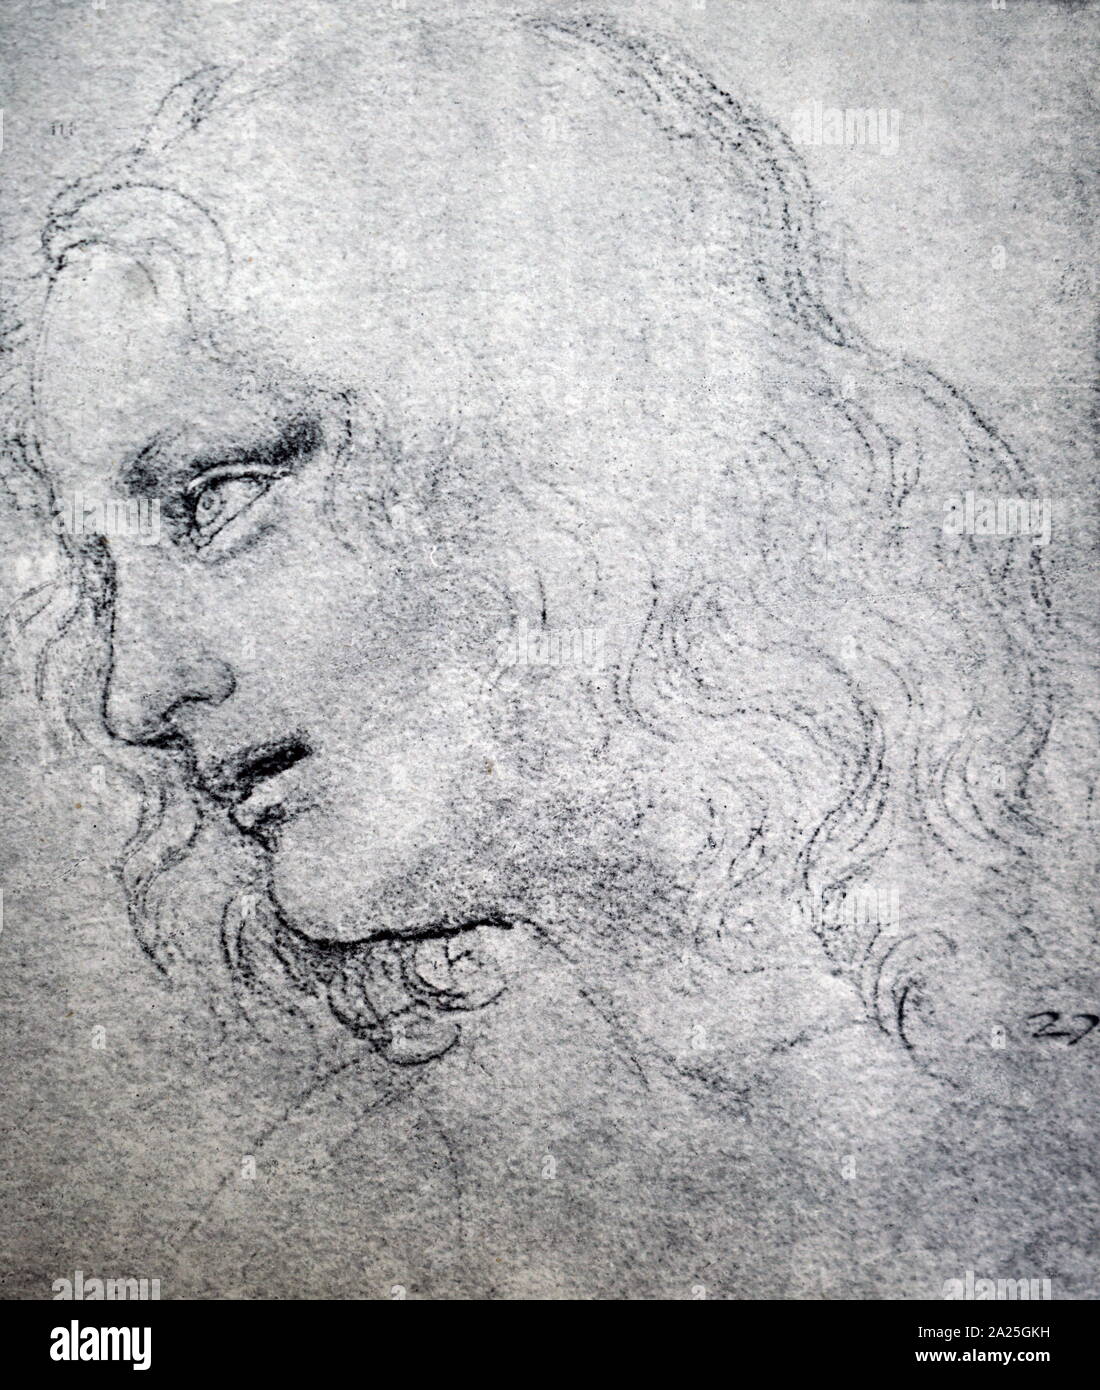 Sketch intitulé "La tête de saint Philippe" de Léonard de Vinci. Leonardo di ser Piero da Vinci (1452-1519) un grand penseur italien de la Renaissance. Banque D'Images